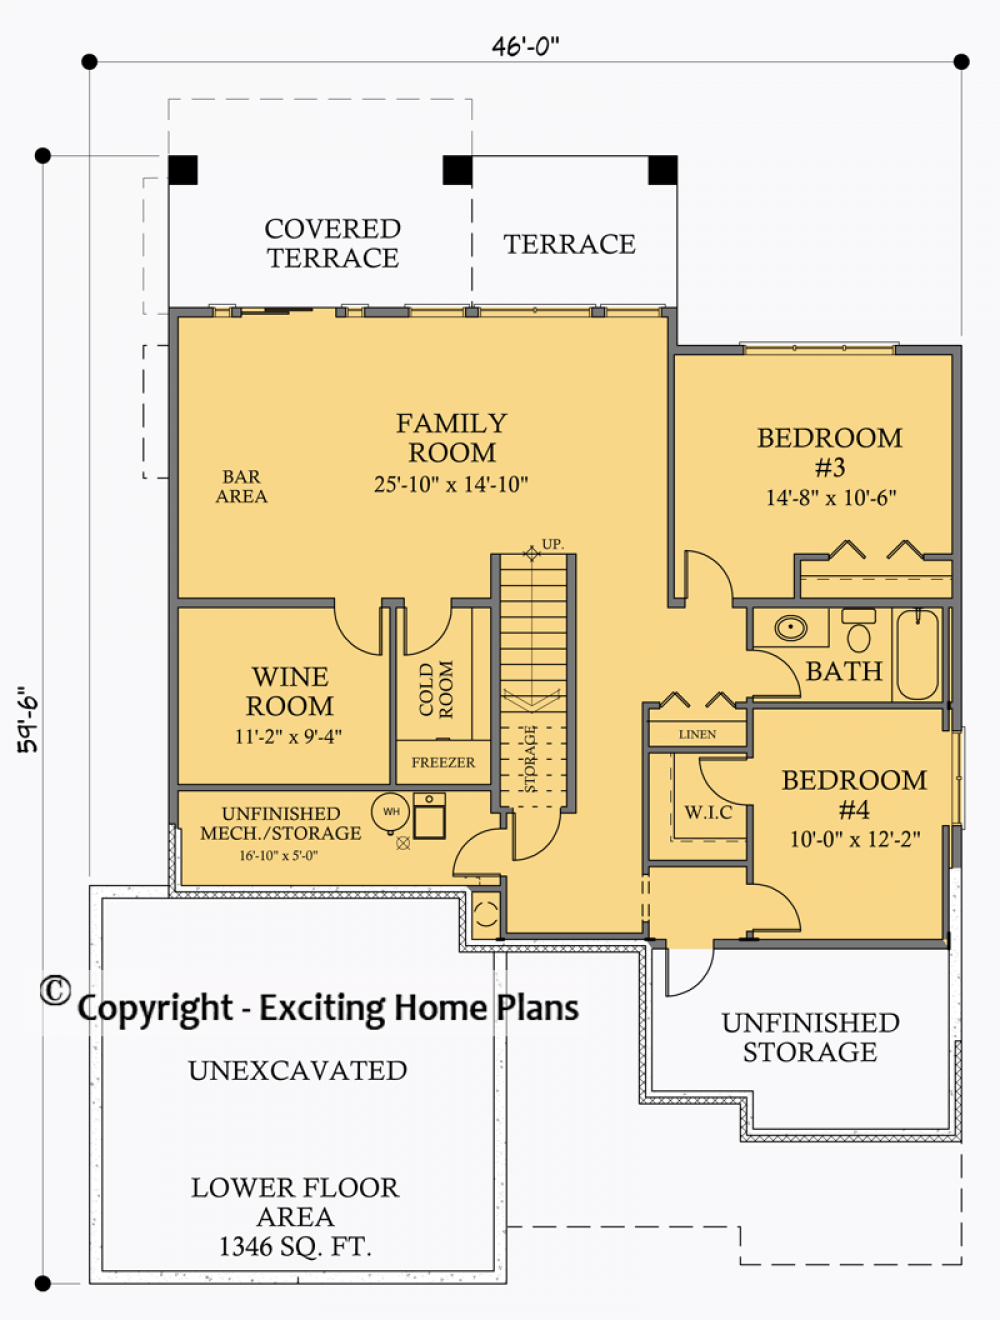 House Plan E1048-10 Lower Floor Plan